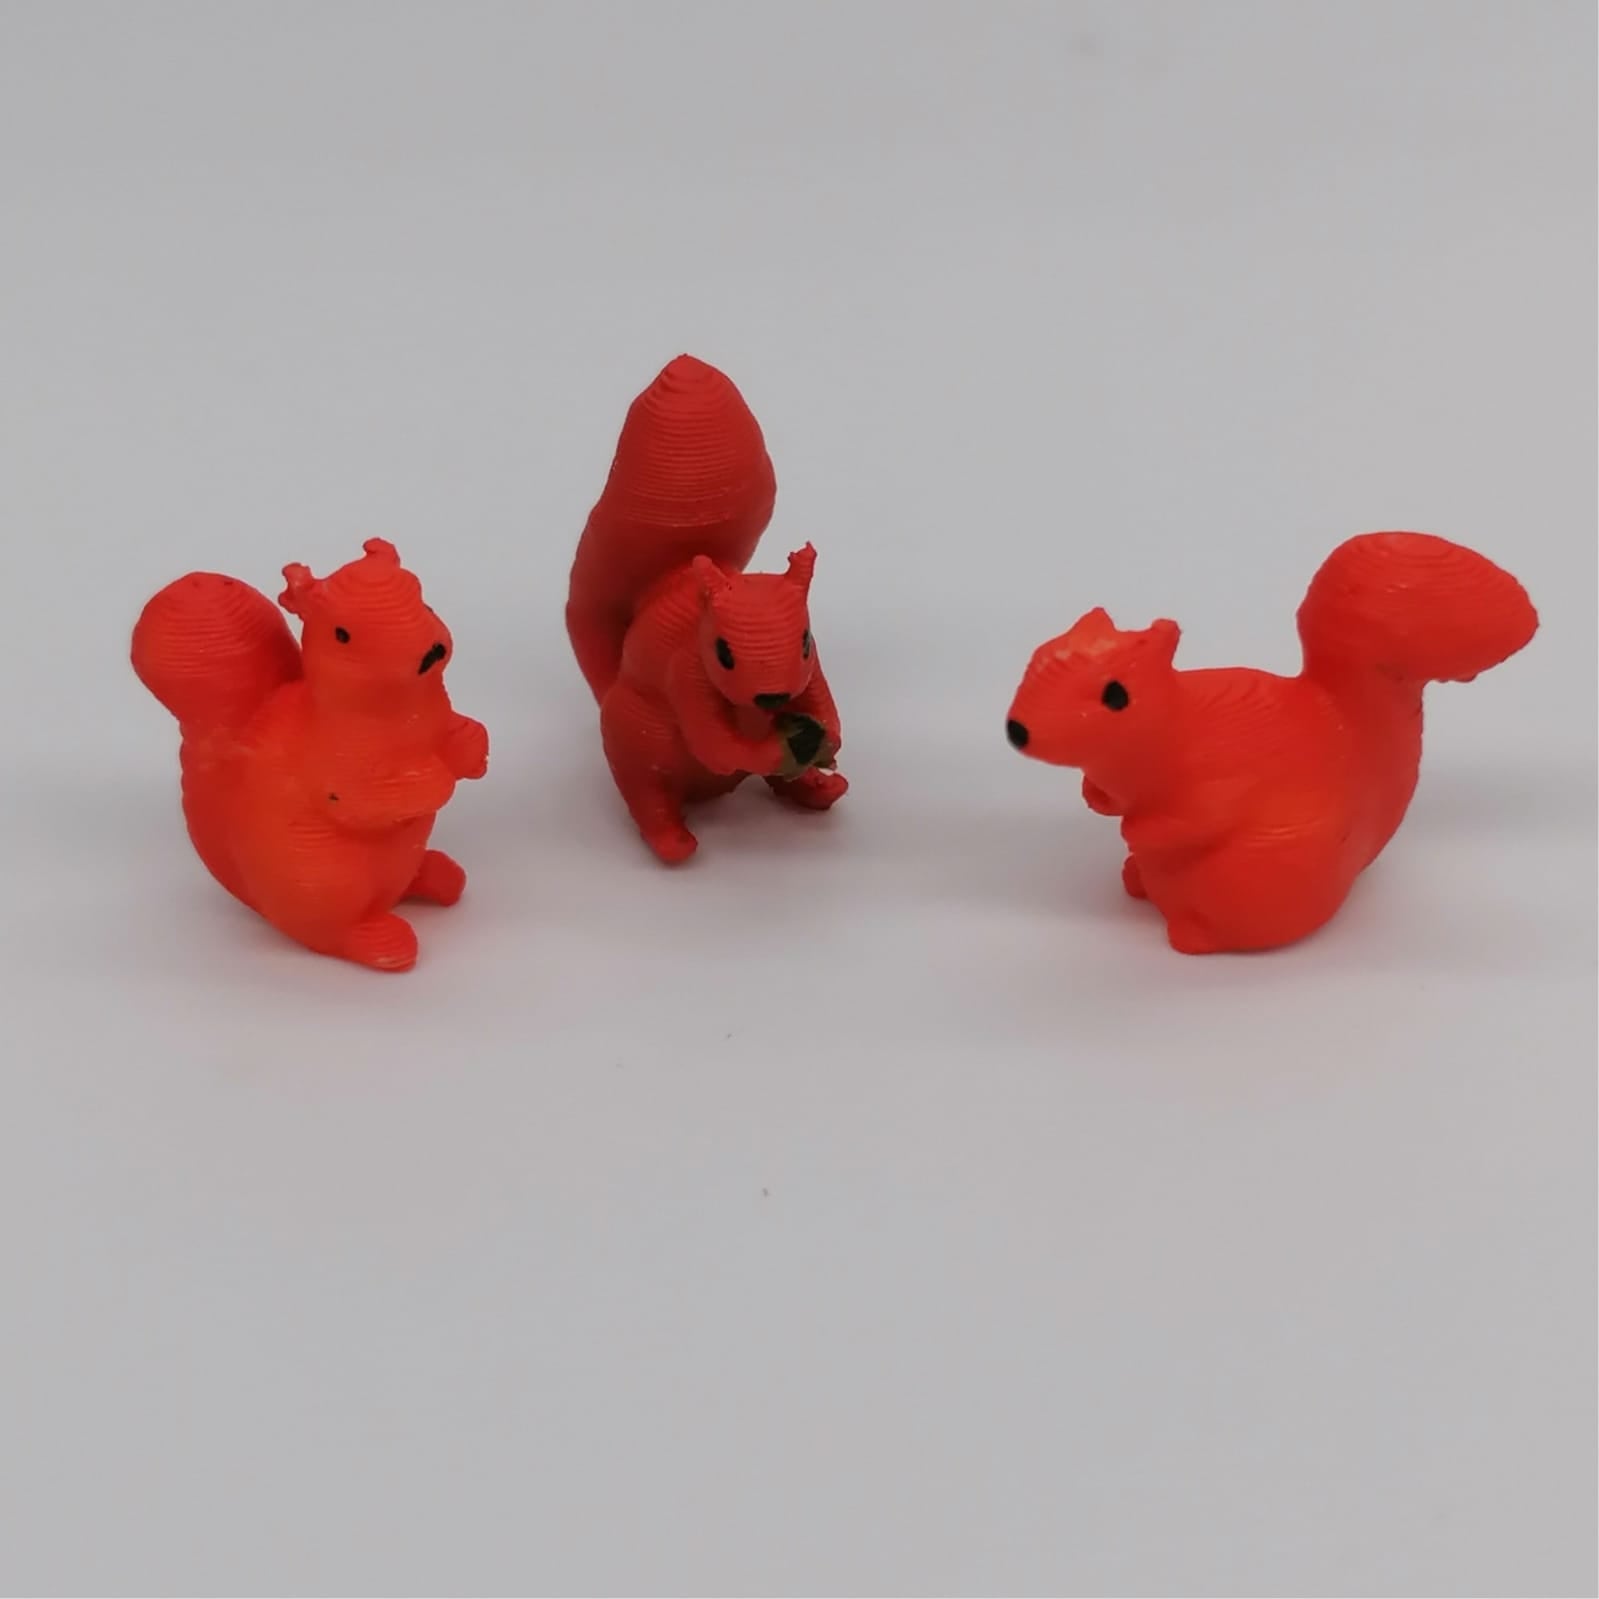 Tiere des Waldes Miniaturen im Maßstab 1:12 - Eichhörnchen - Miniaturen